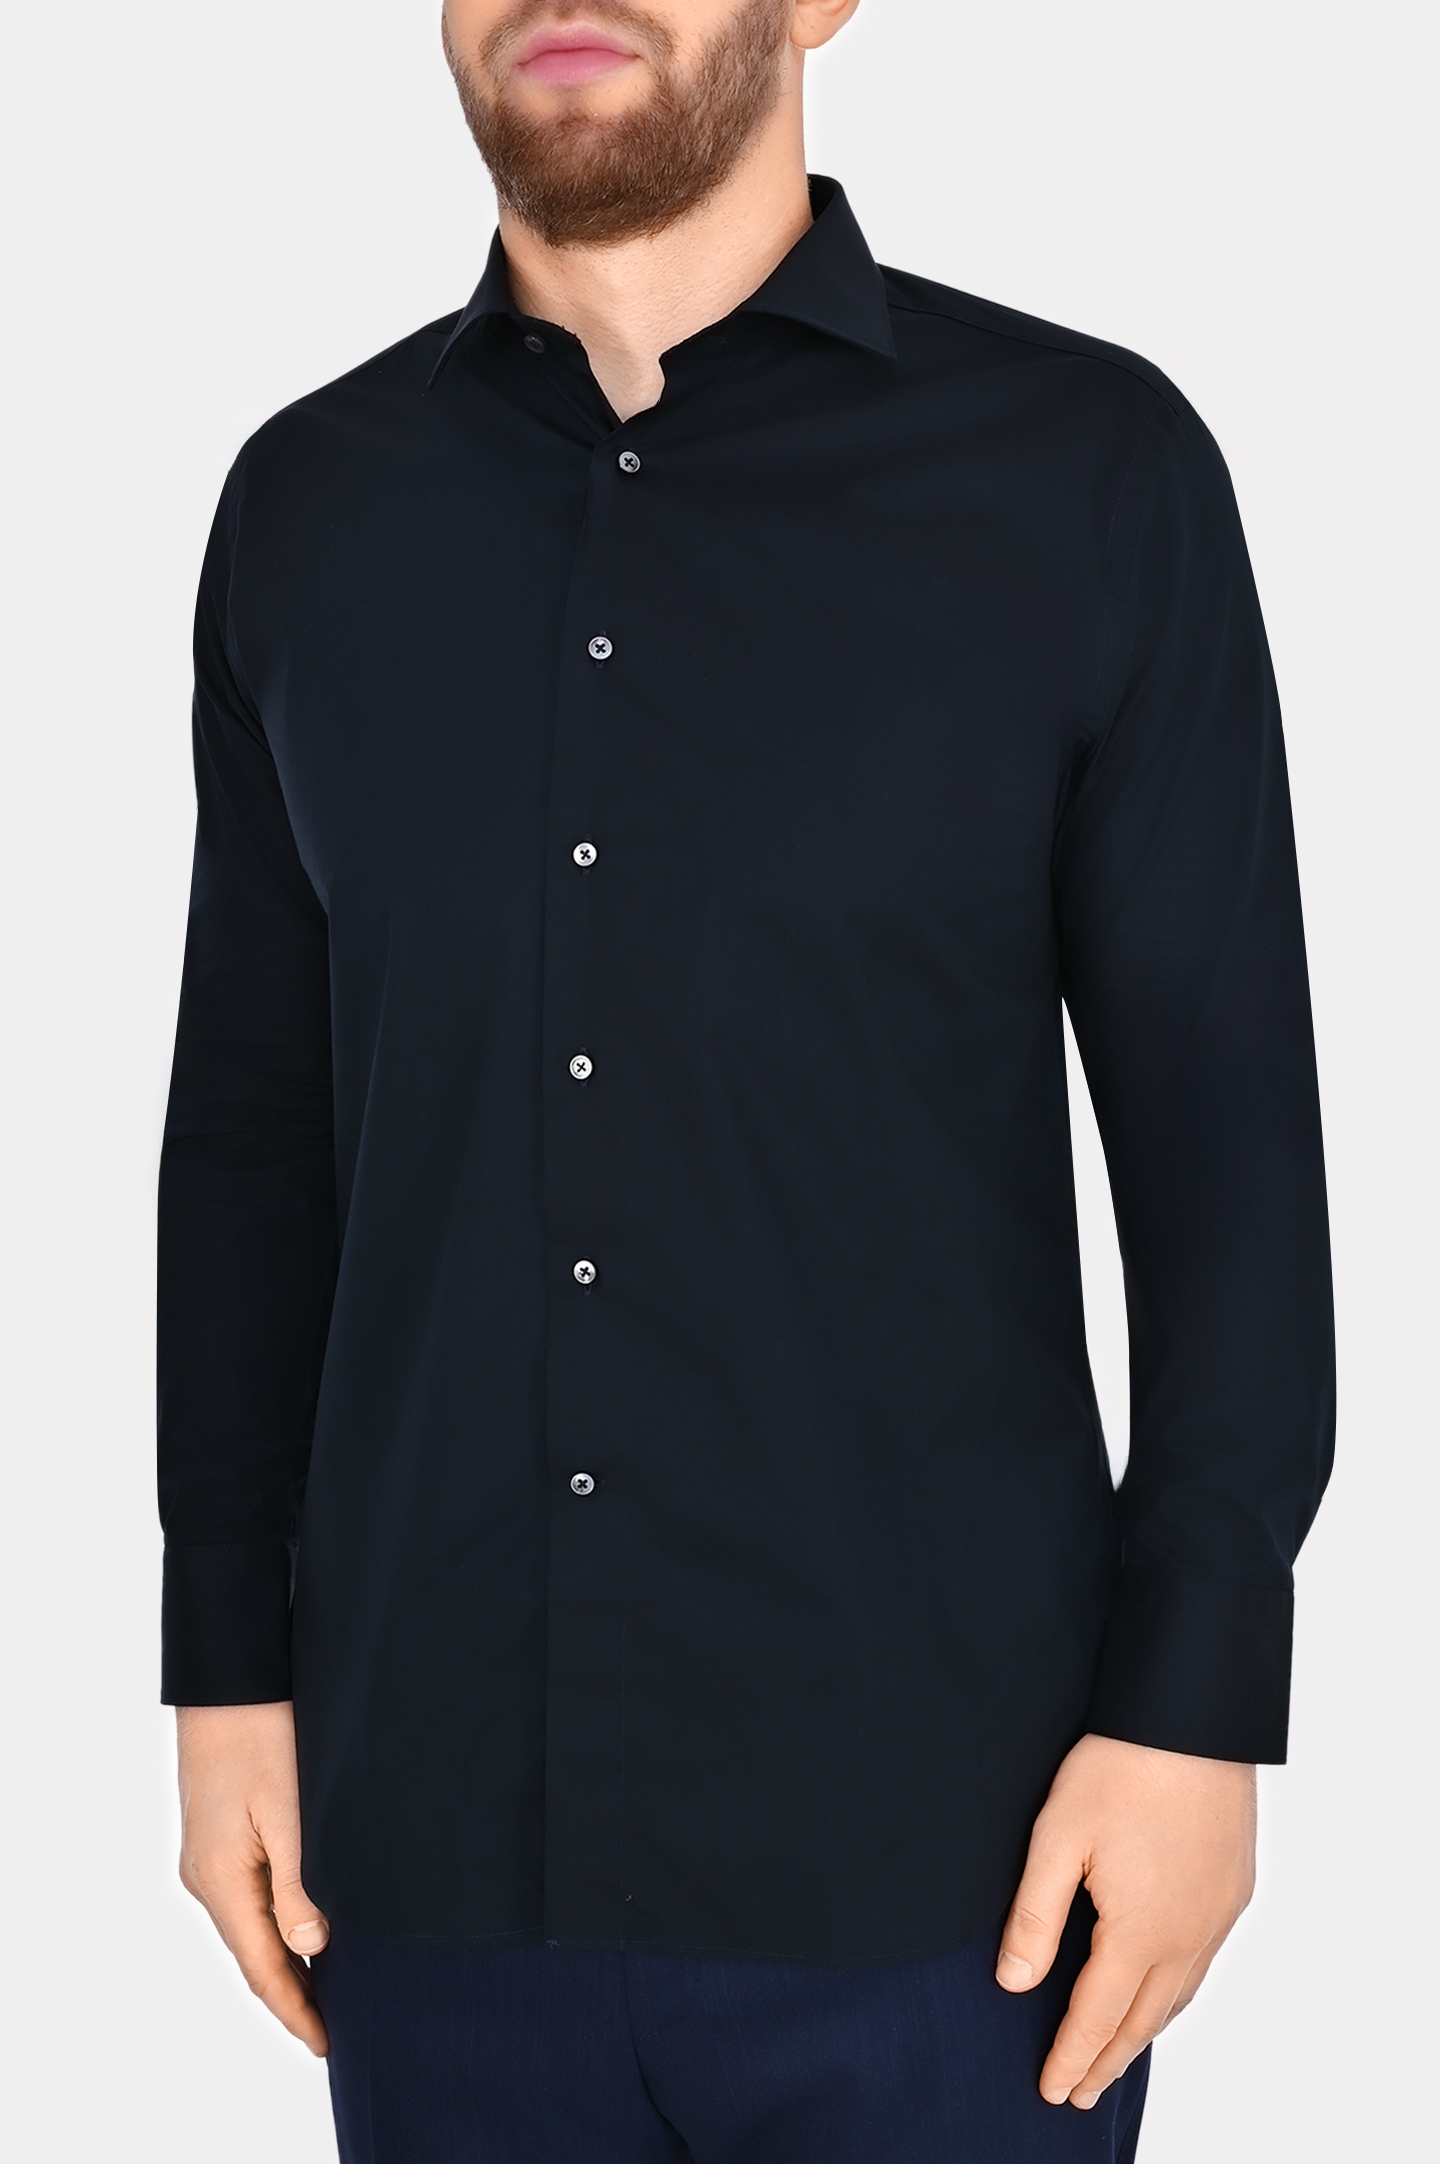 Рубашка из хлопка и эластана CANALI GD02832 7C3/1, цвет: Темно-синий, Мужской